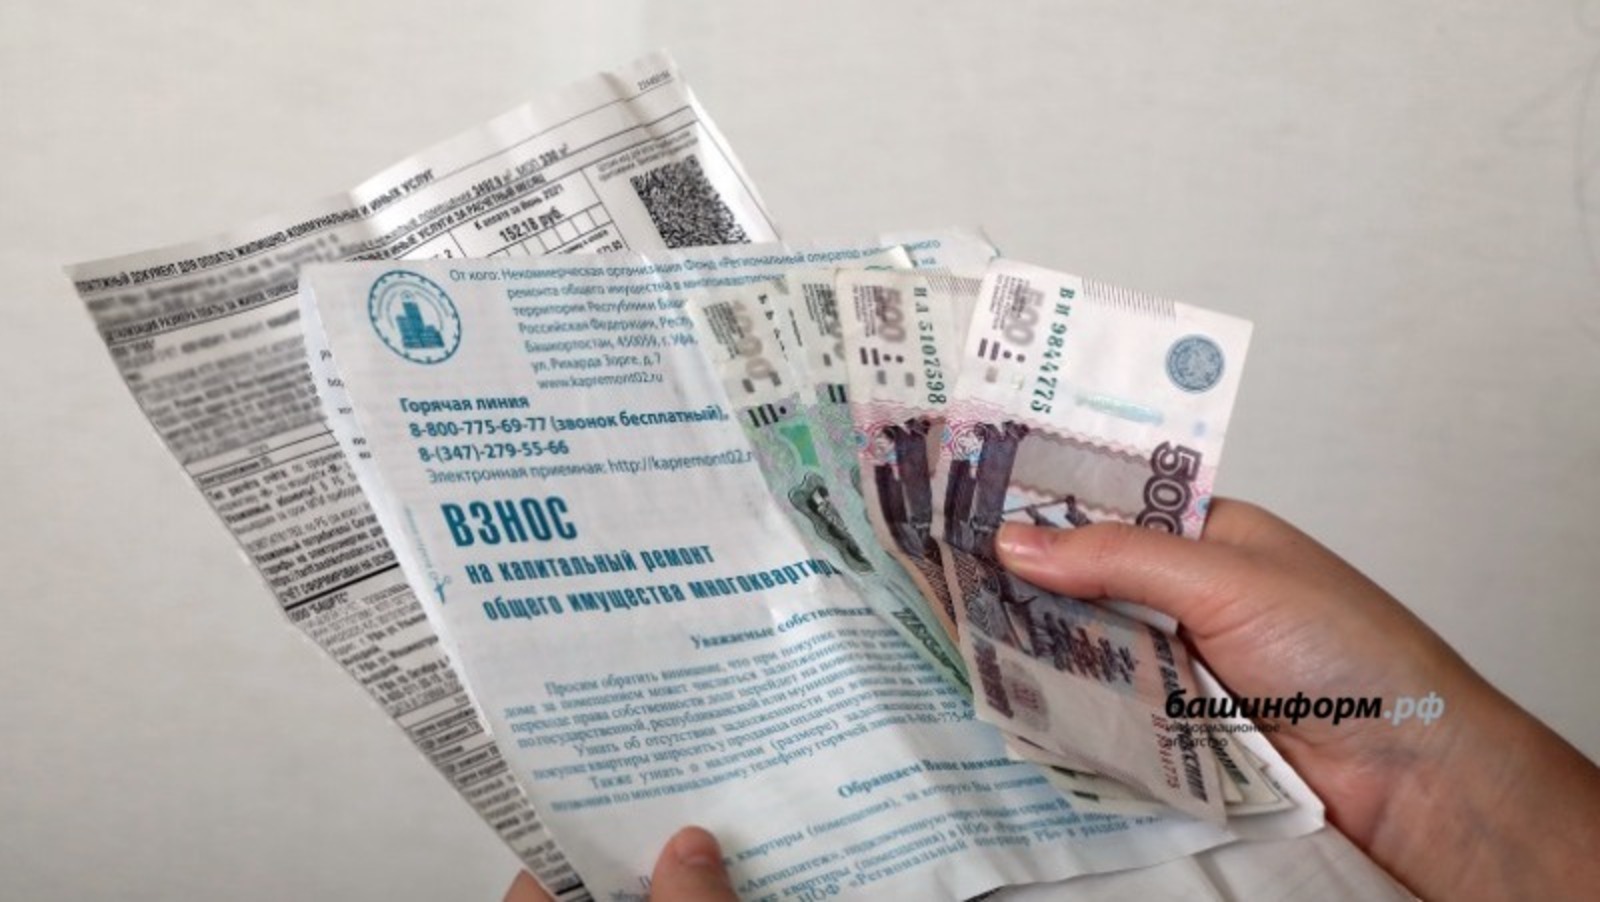 Жители Башкирии смогут получить квитанции за услуги ЖКХ на портале госуслуг